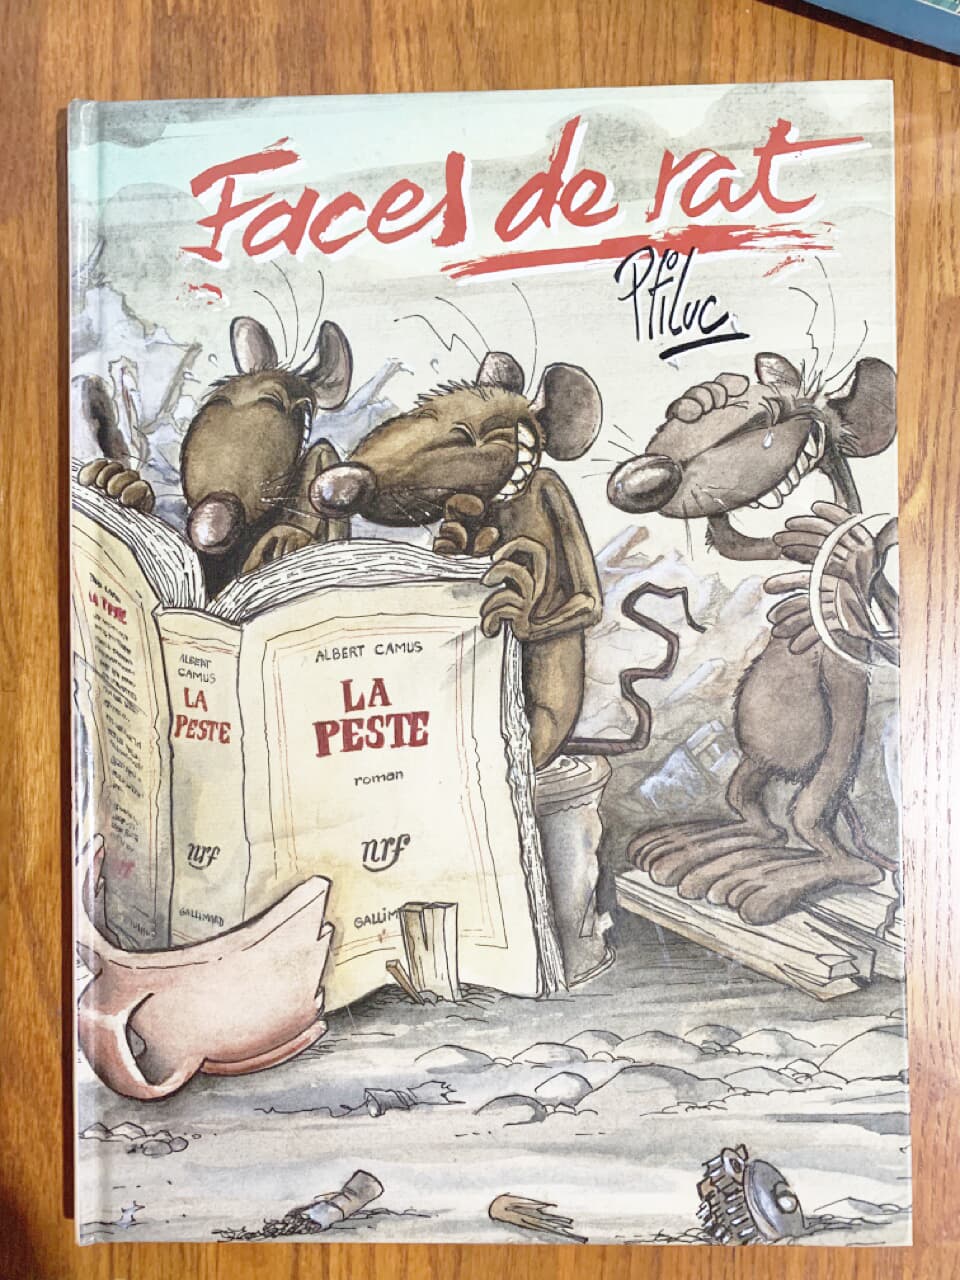 Faces de Rat